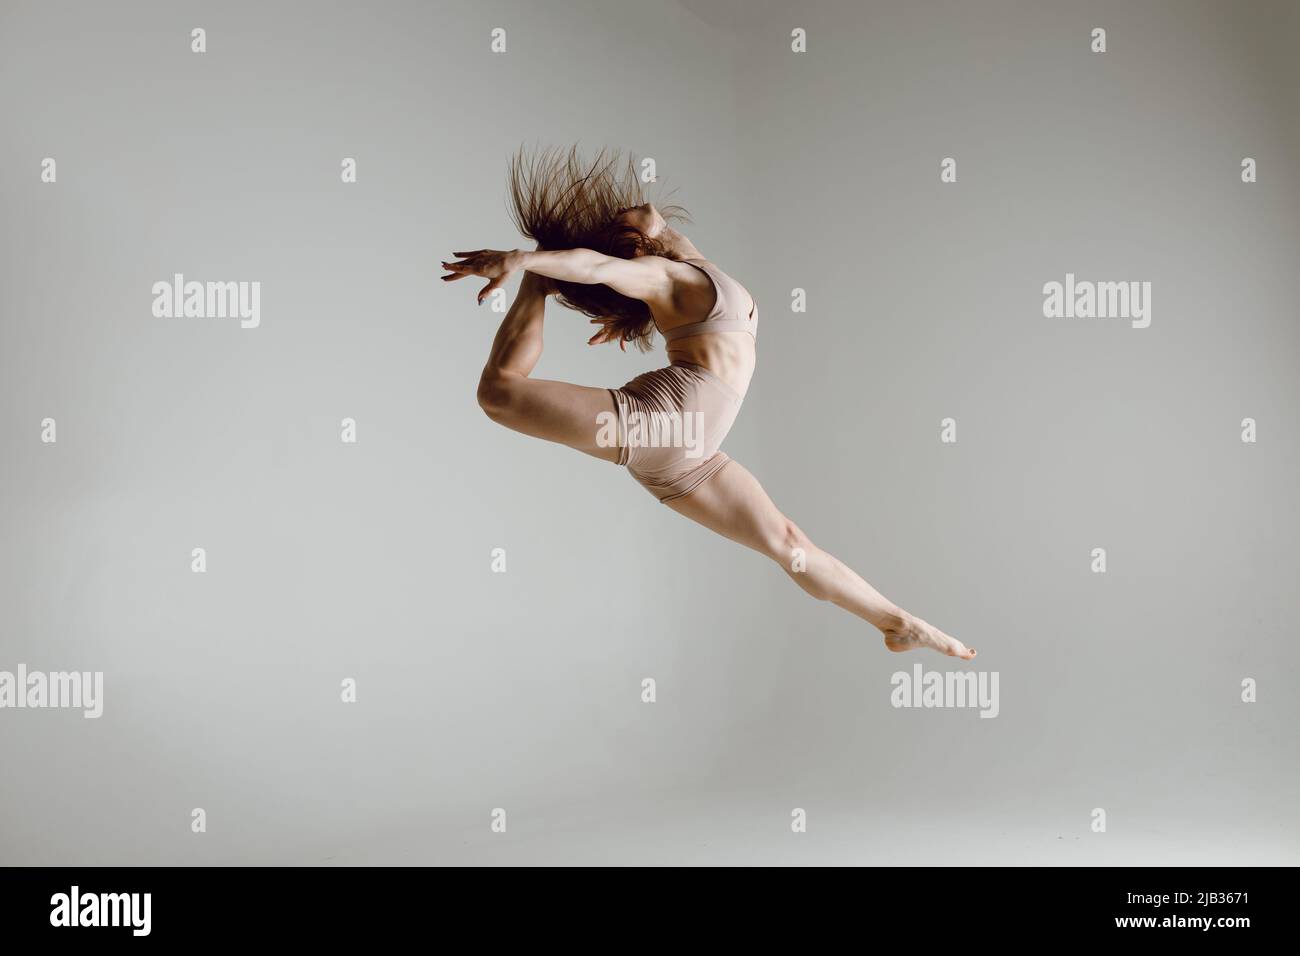 Young woman contemporary ballet dancer dancing high heels dance jumping leg split ballerina Stock Photo